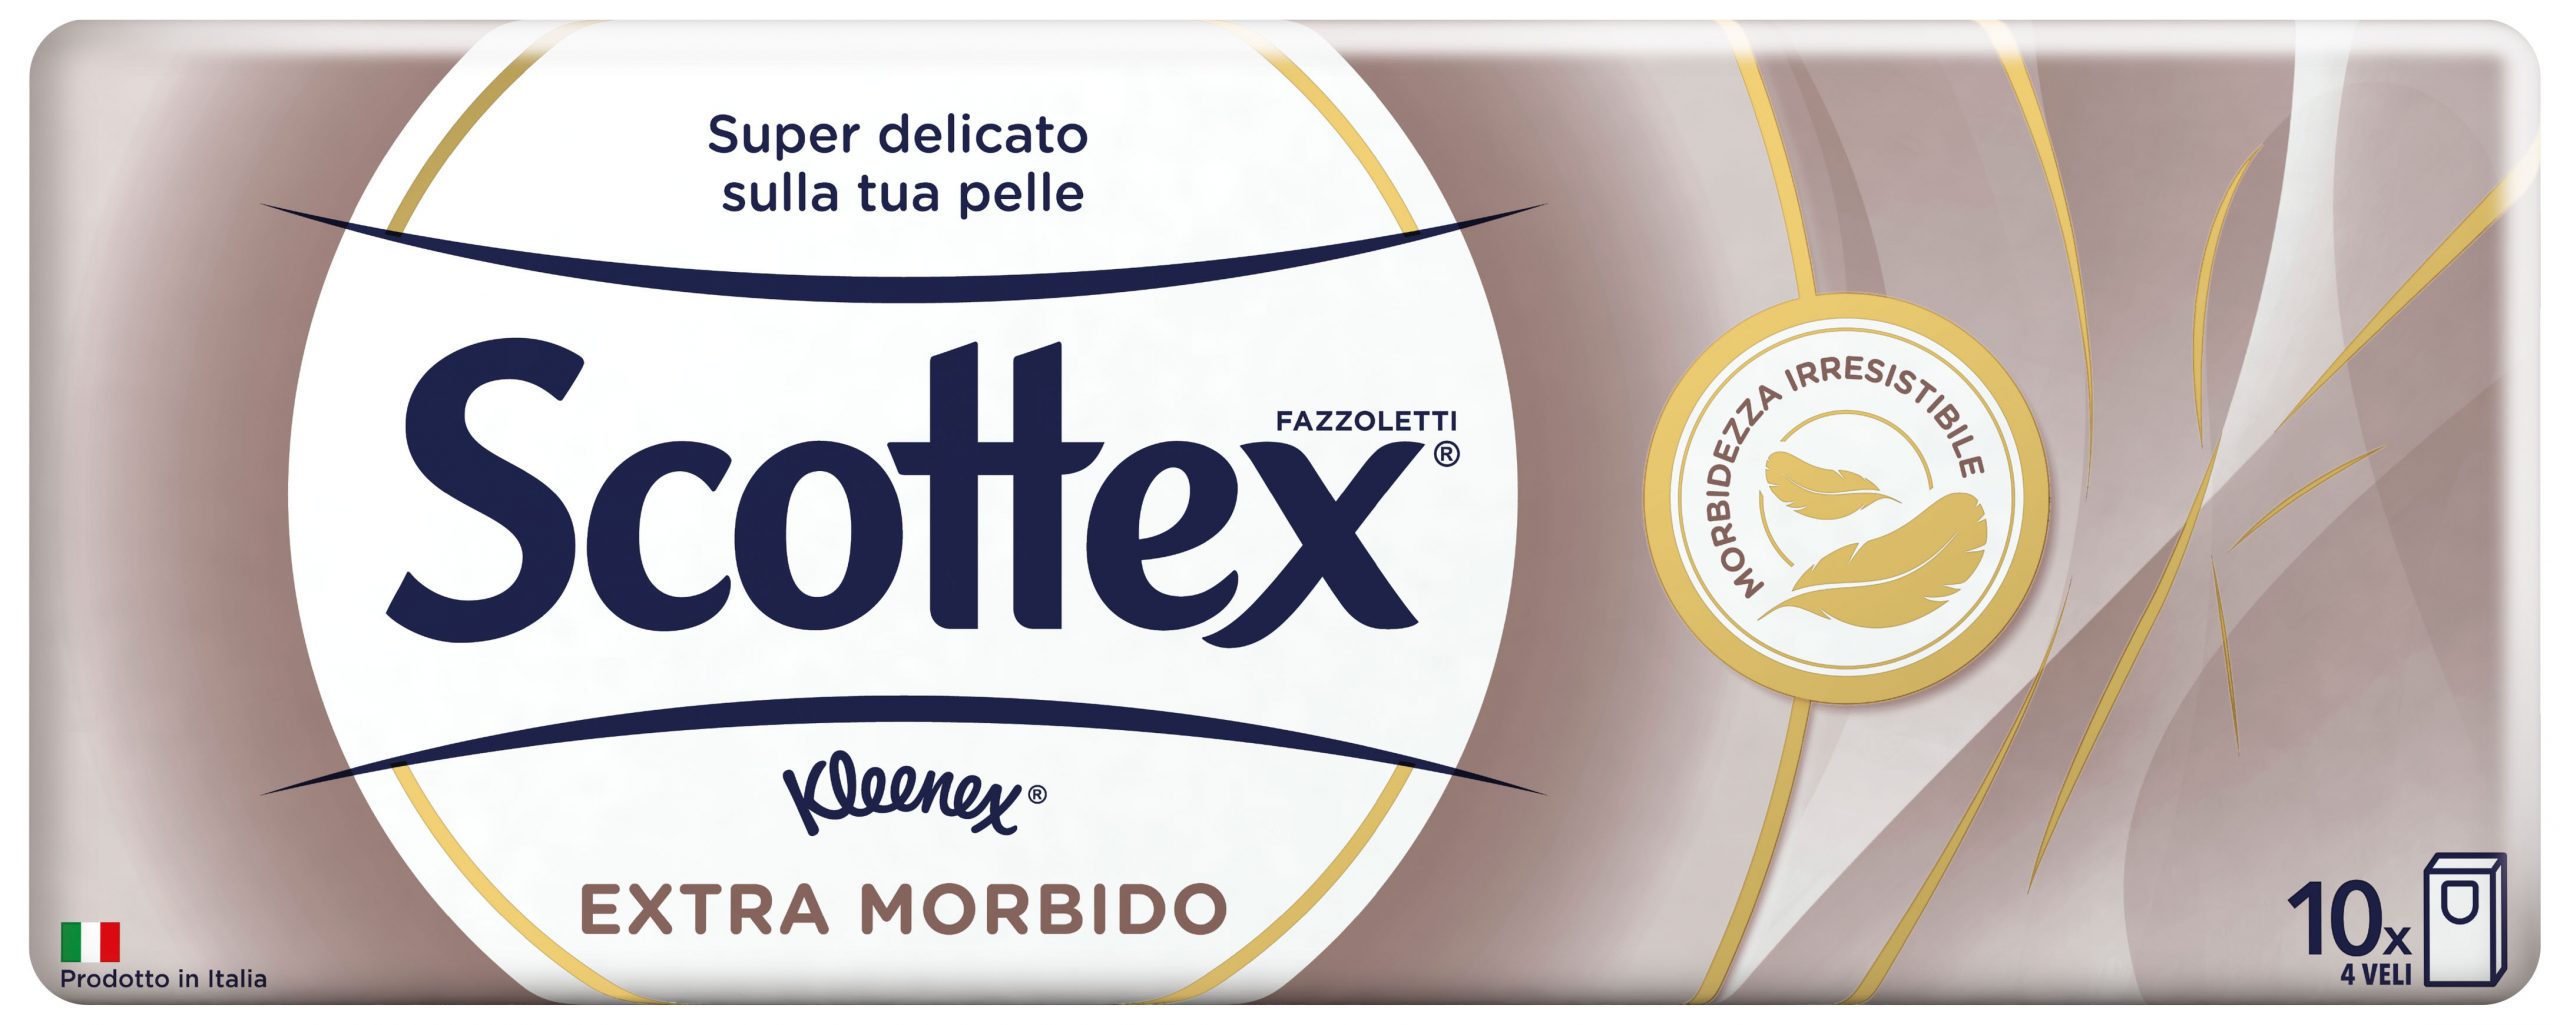 Scottex extra morbido p10 - Scottex